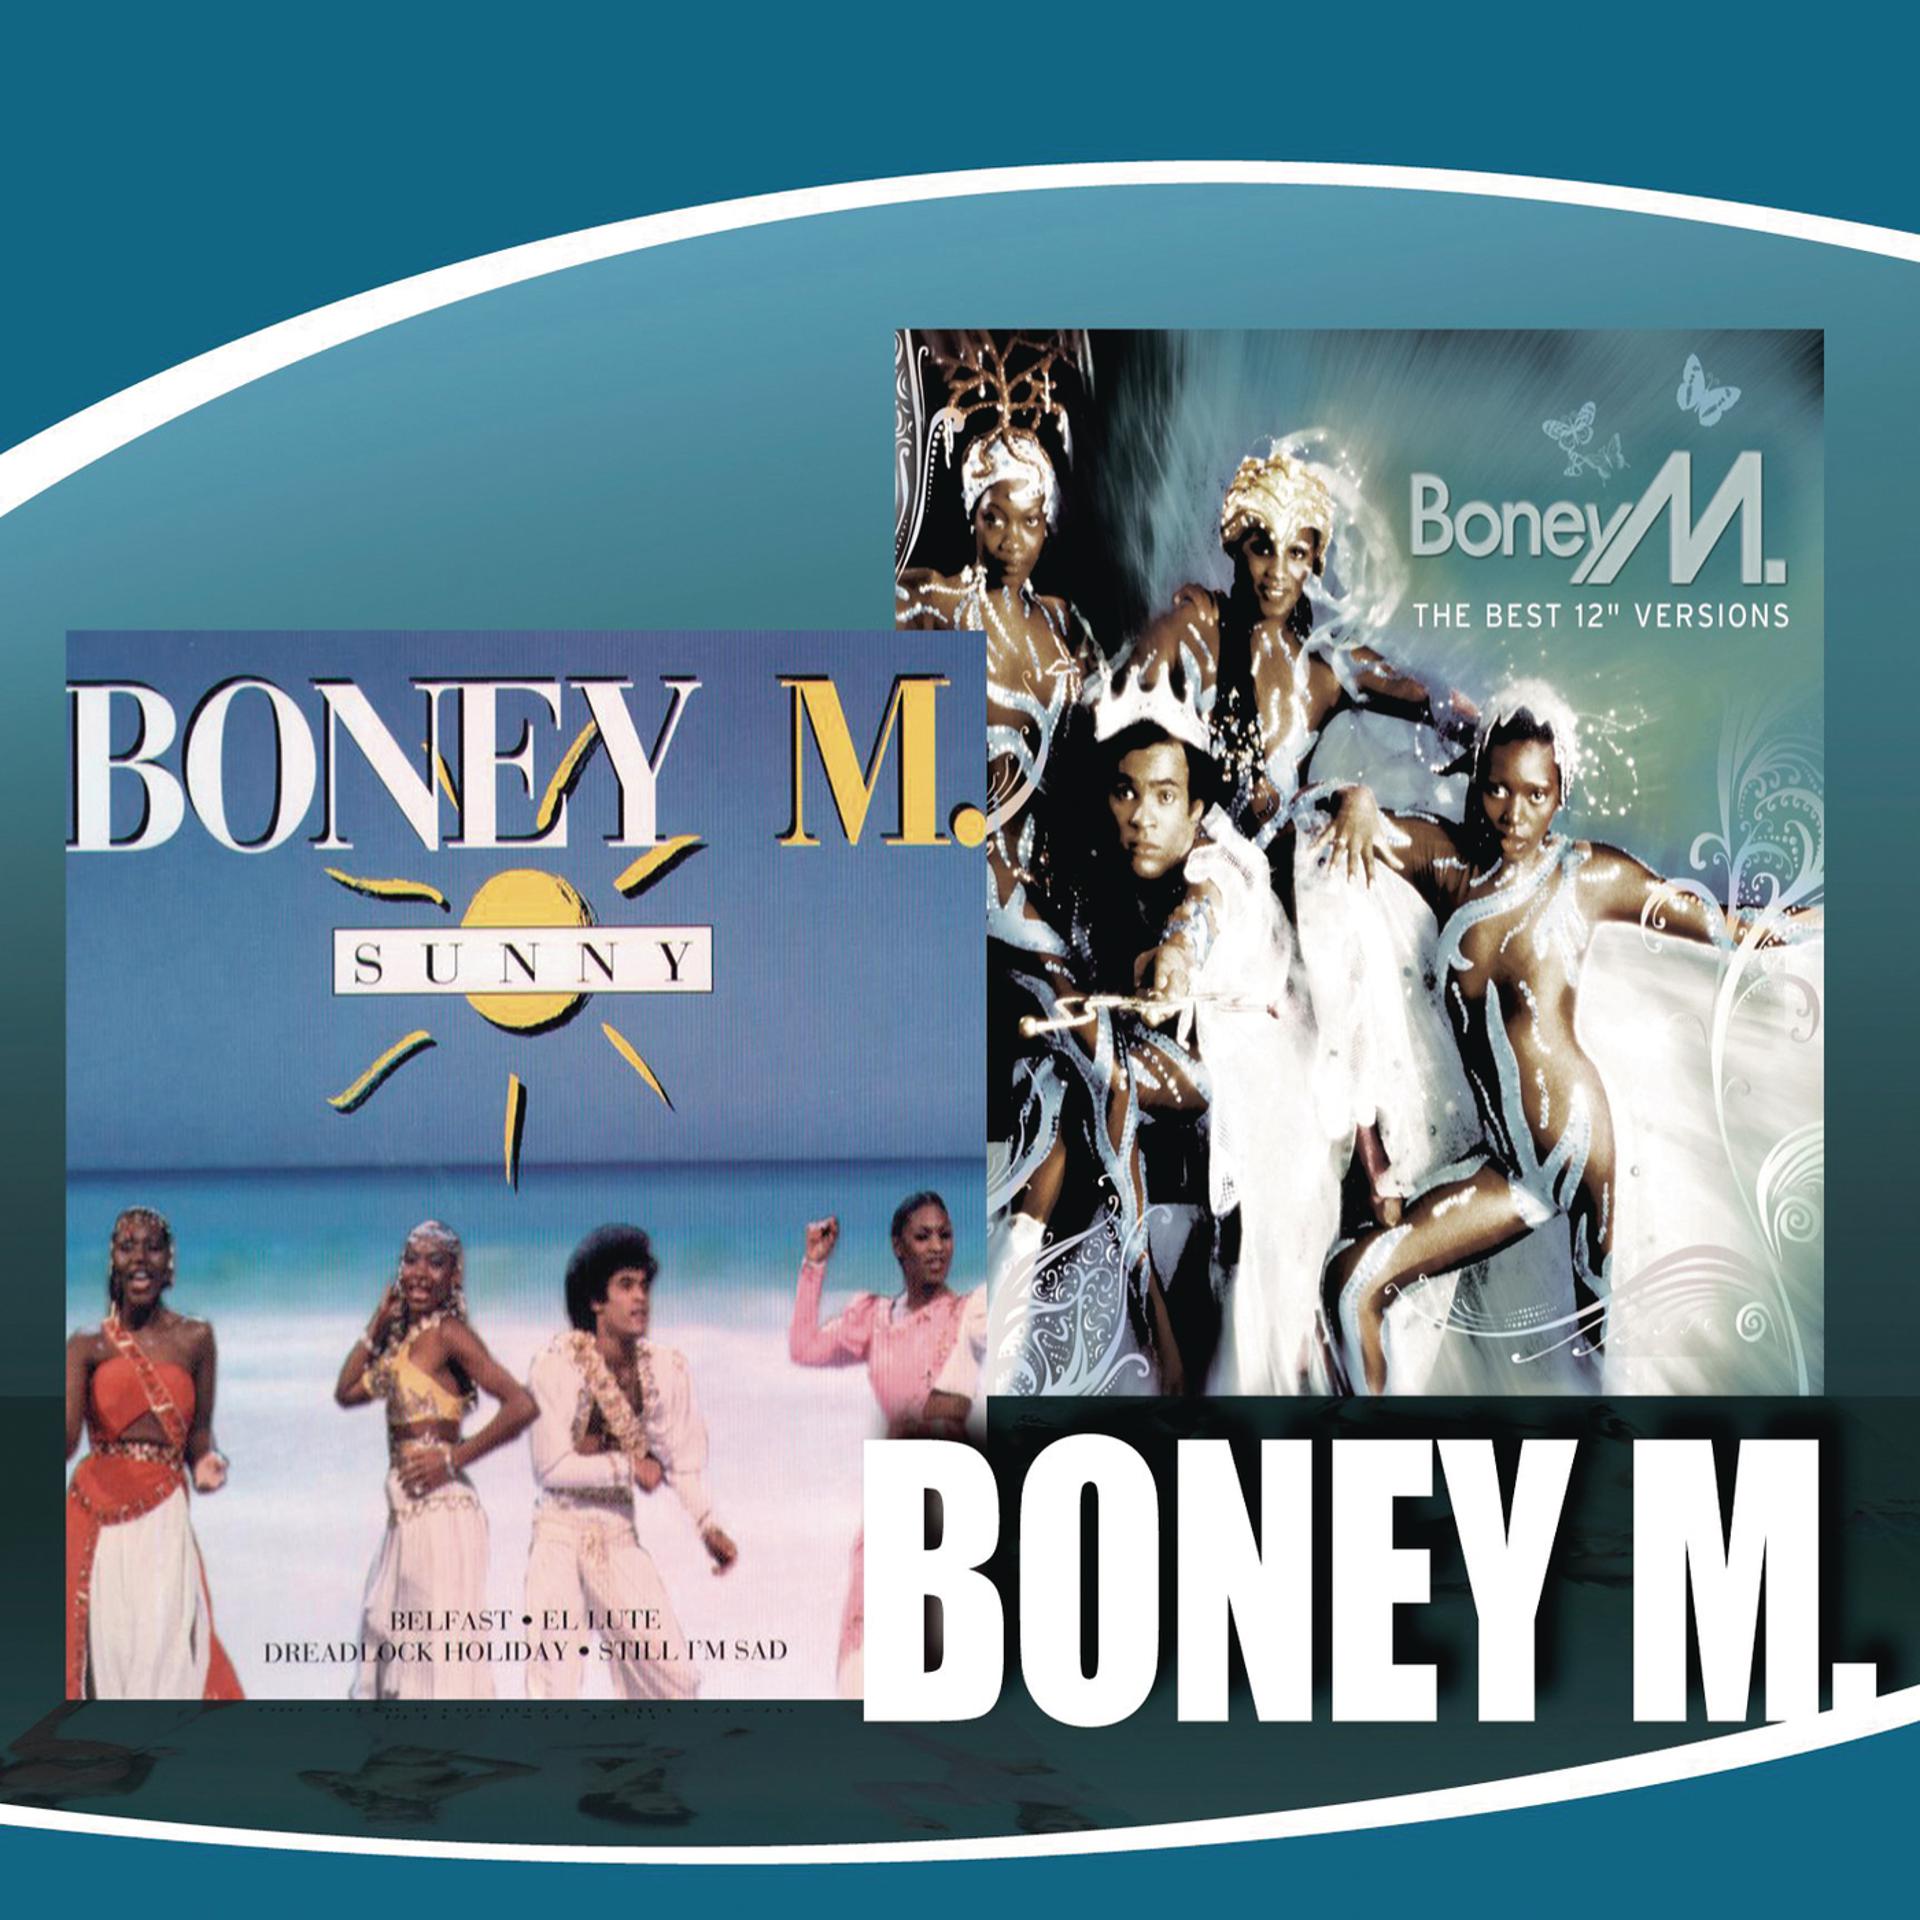 Boney m Sunny обложка. Boney m обложки альбомов. Boney m 2014. Первый состав Boney m. Boney m kalimba